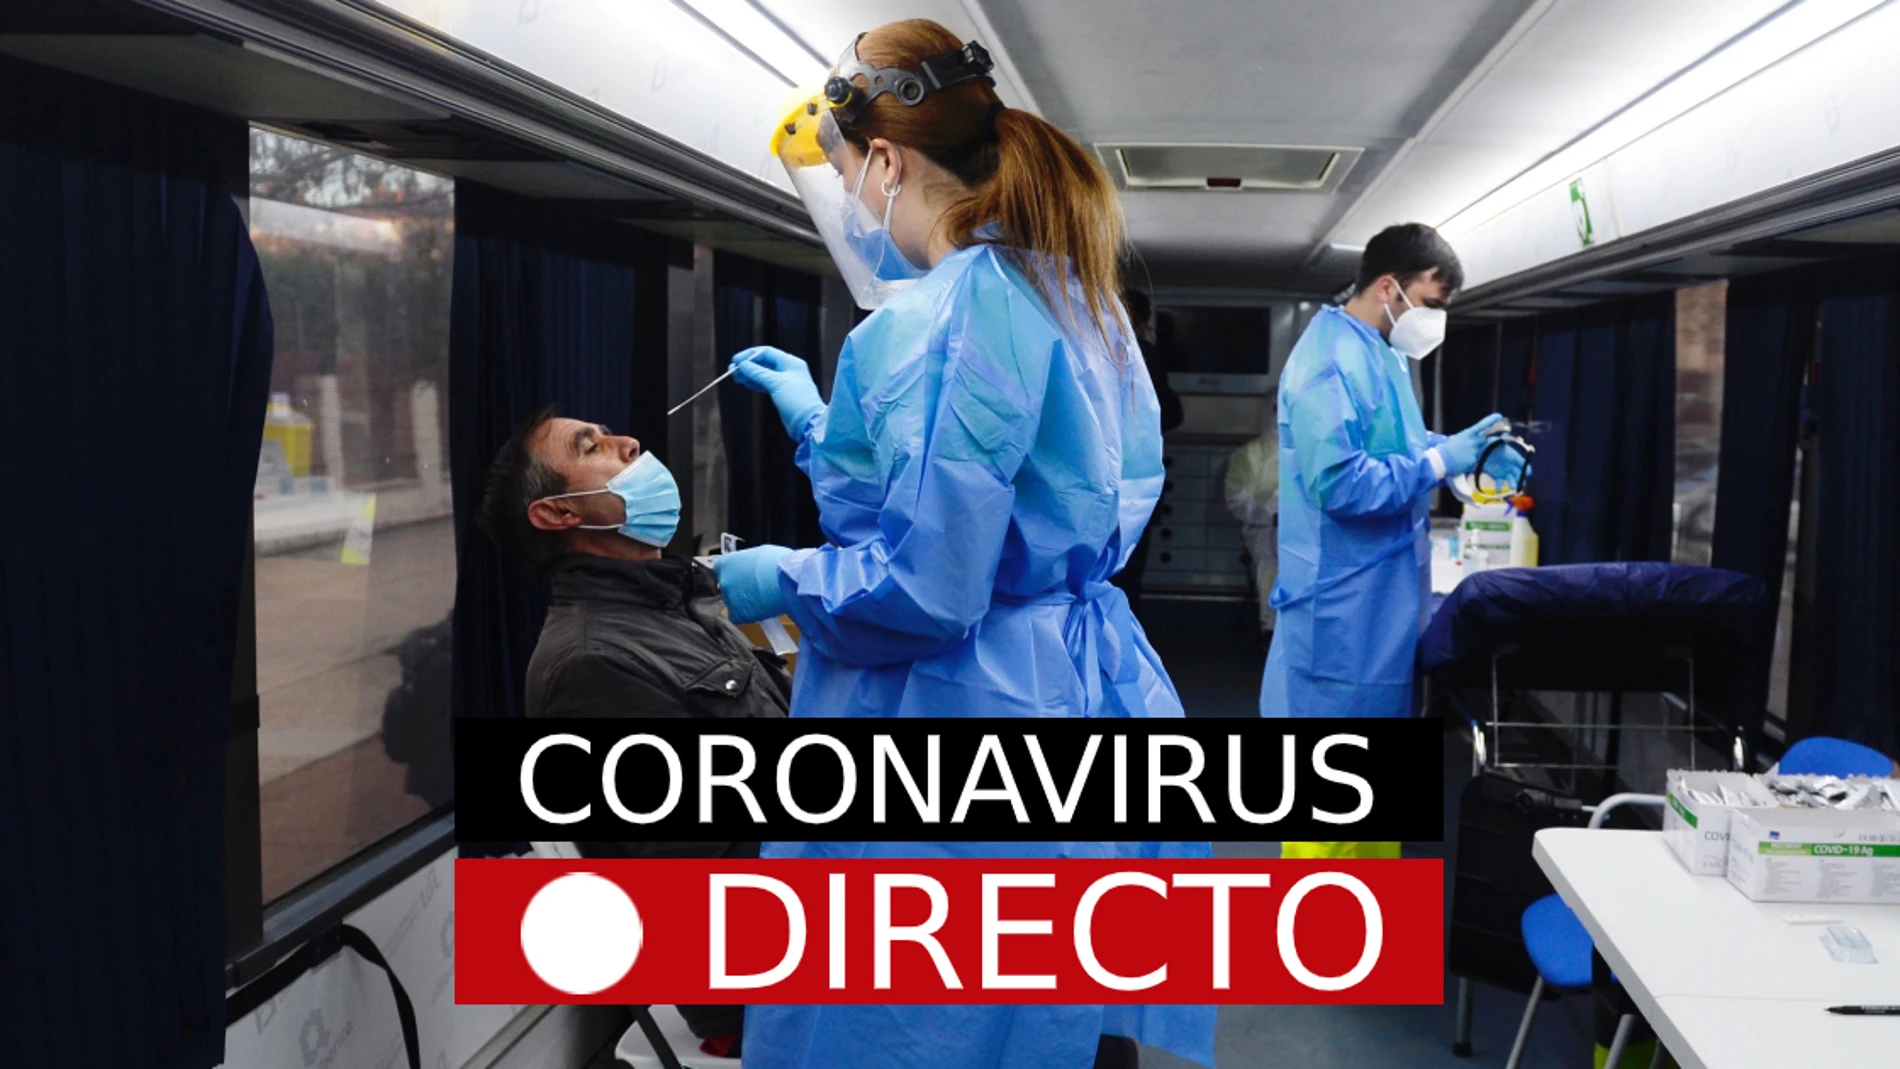 Noticias de COVID en España, hoy: Última hora del coronavirus​, en directo